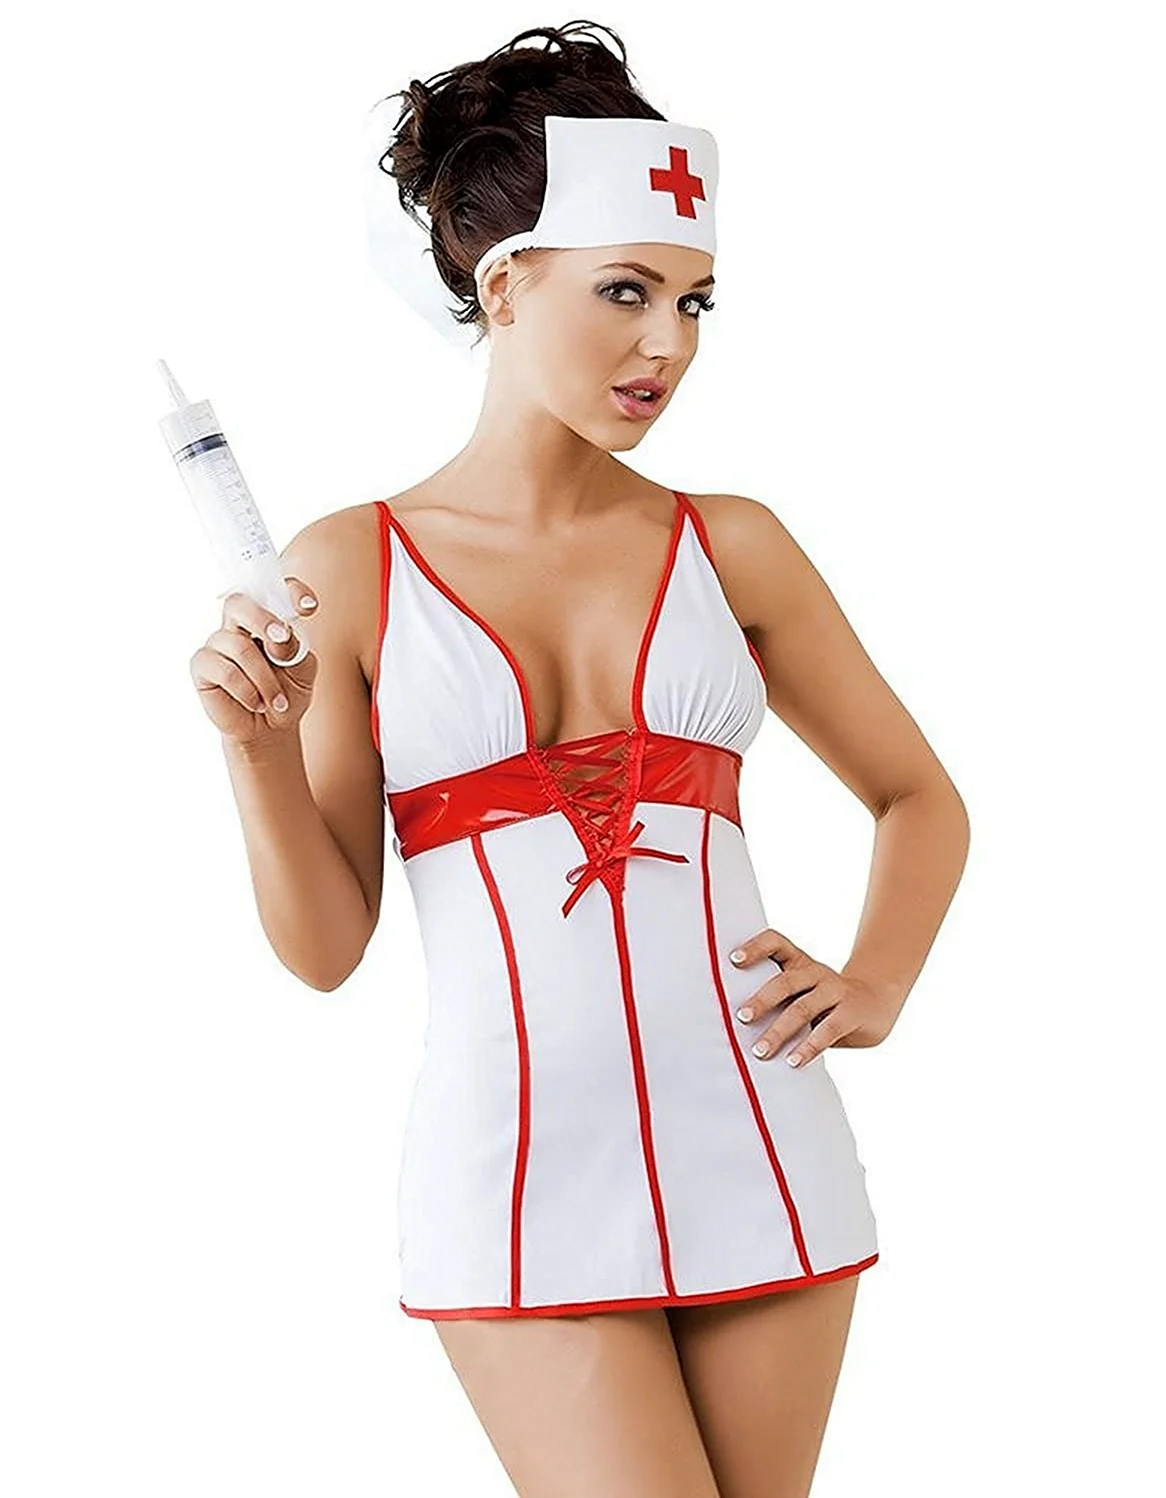 Эротический халат медсестры. Красивая девушка